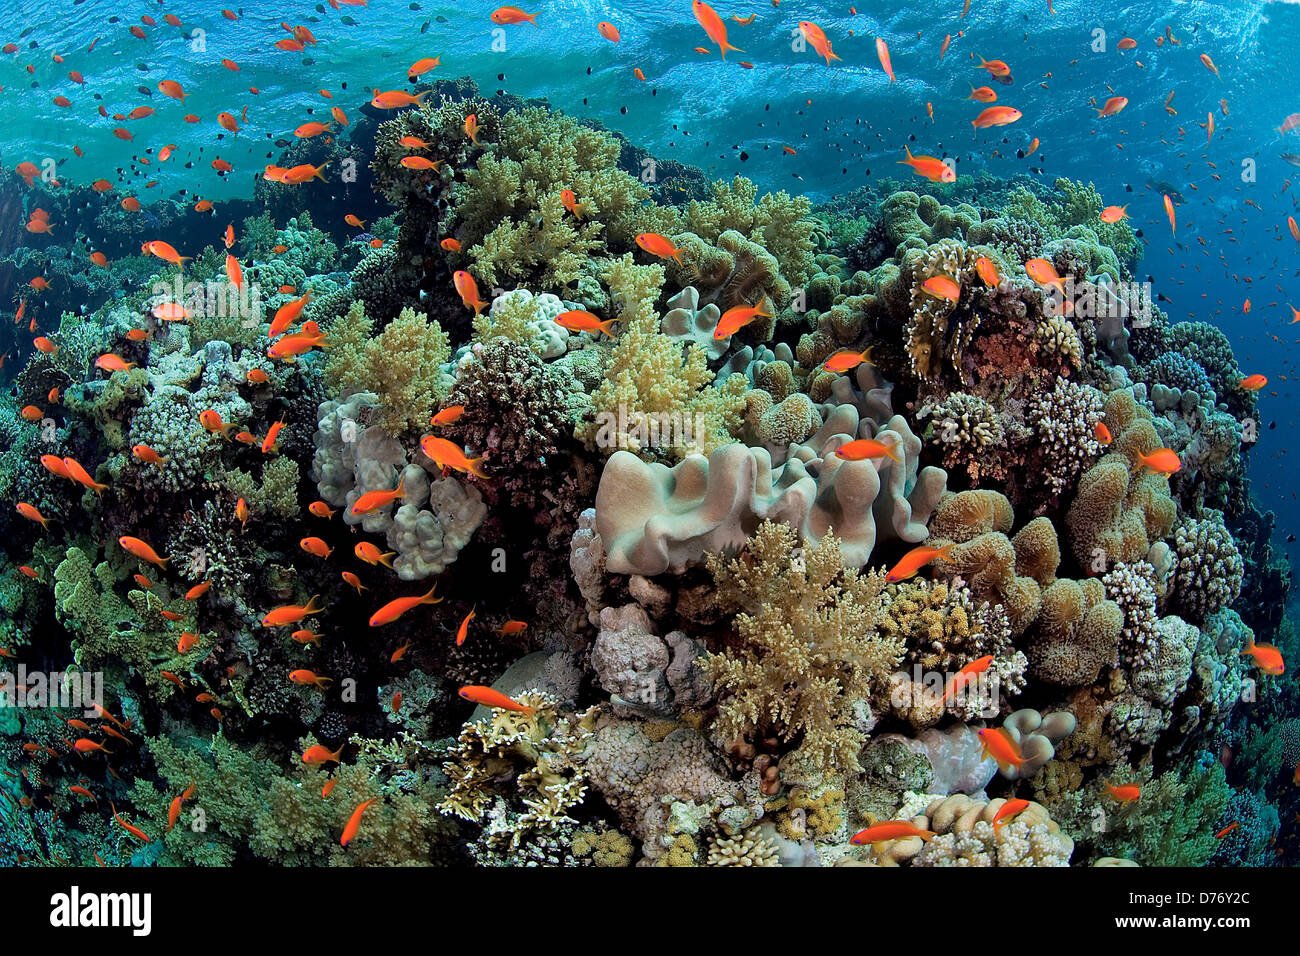 Лучшие отели с коралловыми рифами. Красное море риф Шарм Эль Шейх. Море в Египте Шарм-Эль-Шейх рифы. Коралловый риф Египет шармаль Шейх. Коралловый риф в Шарм Эль Шейхе.